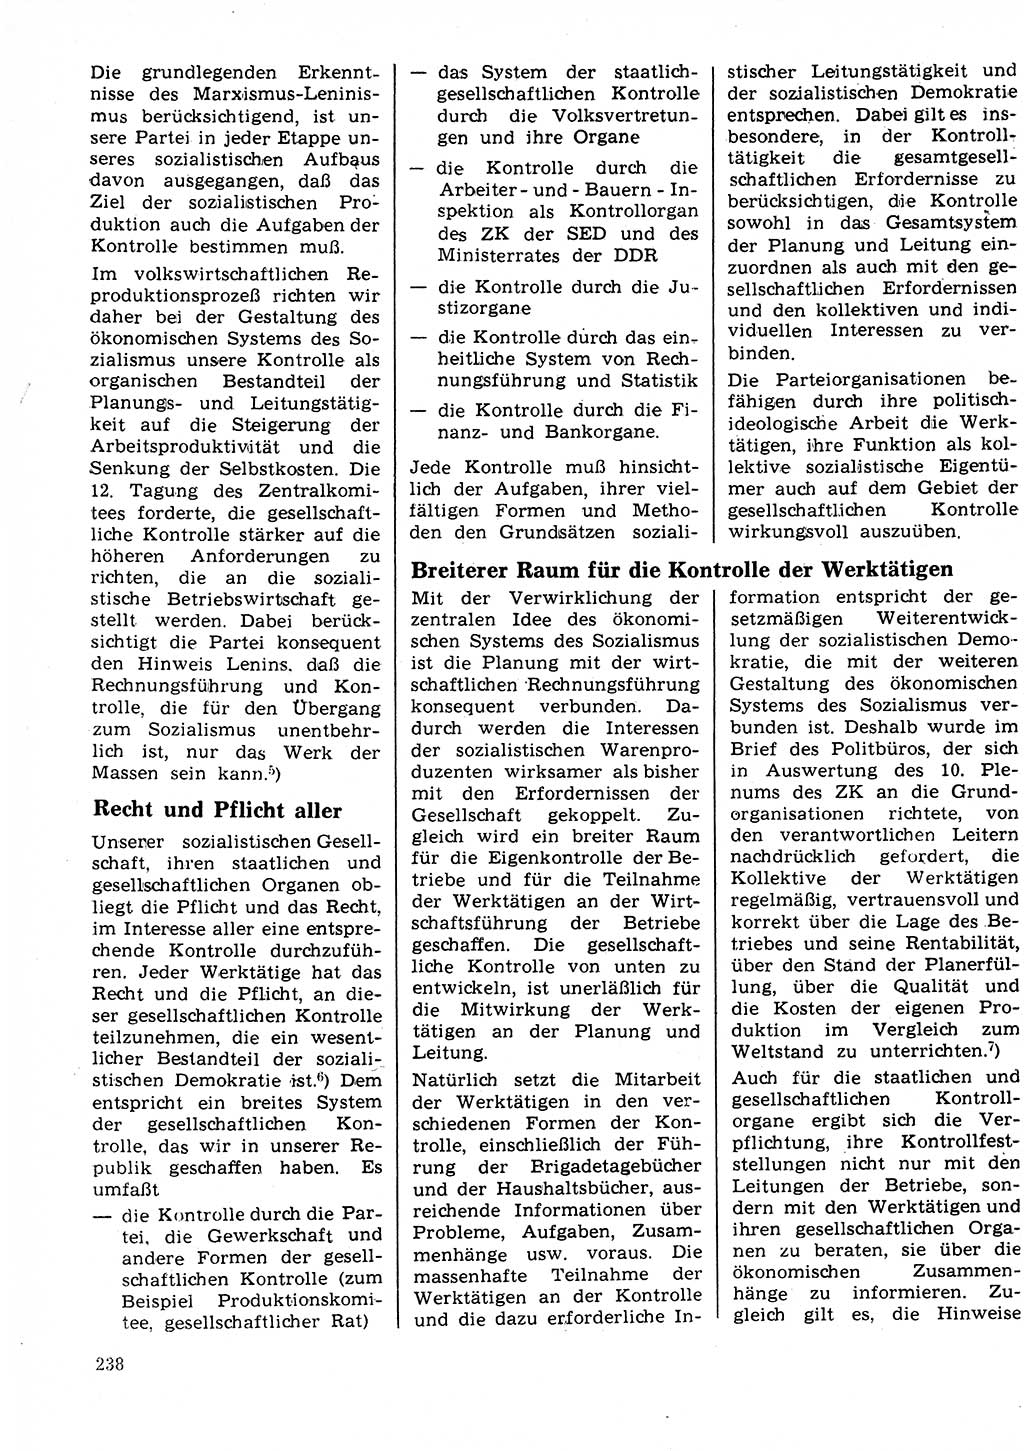 Neuer Weg (NW), Organ des Zentralkomitees (ZK) der SED (Sozialistische Einheitspartei Deutschlands) für Fragen des Parteilebens, 25. Jahrgang [Deutsche Demokratische Republik (DDR)] 1970, Seite 238 (NW ZK SED DDR 1970, S. 238)